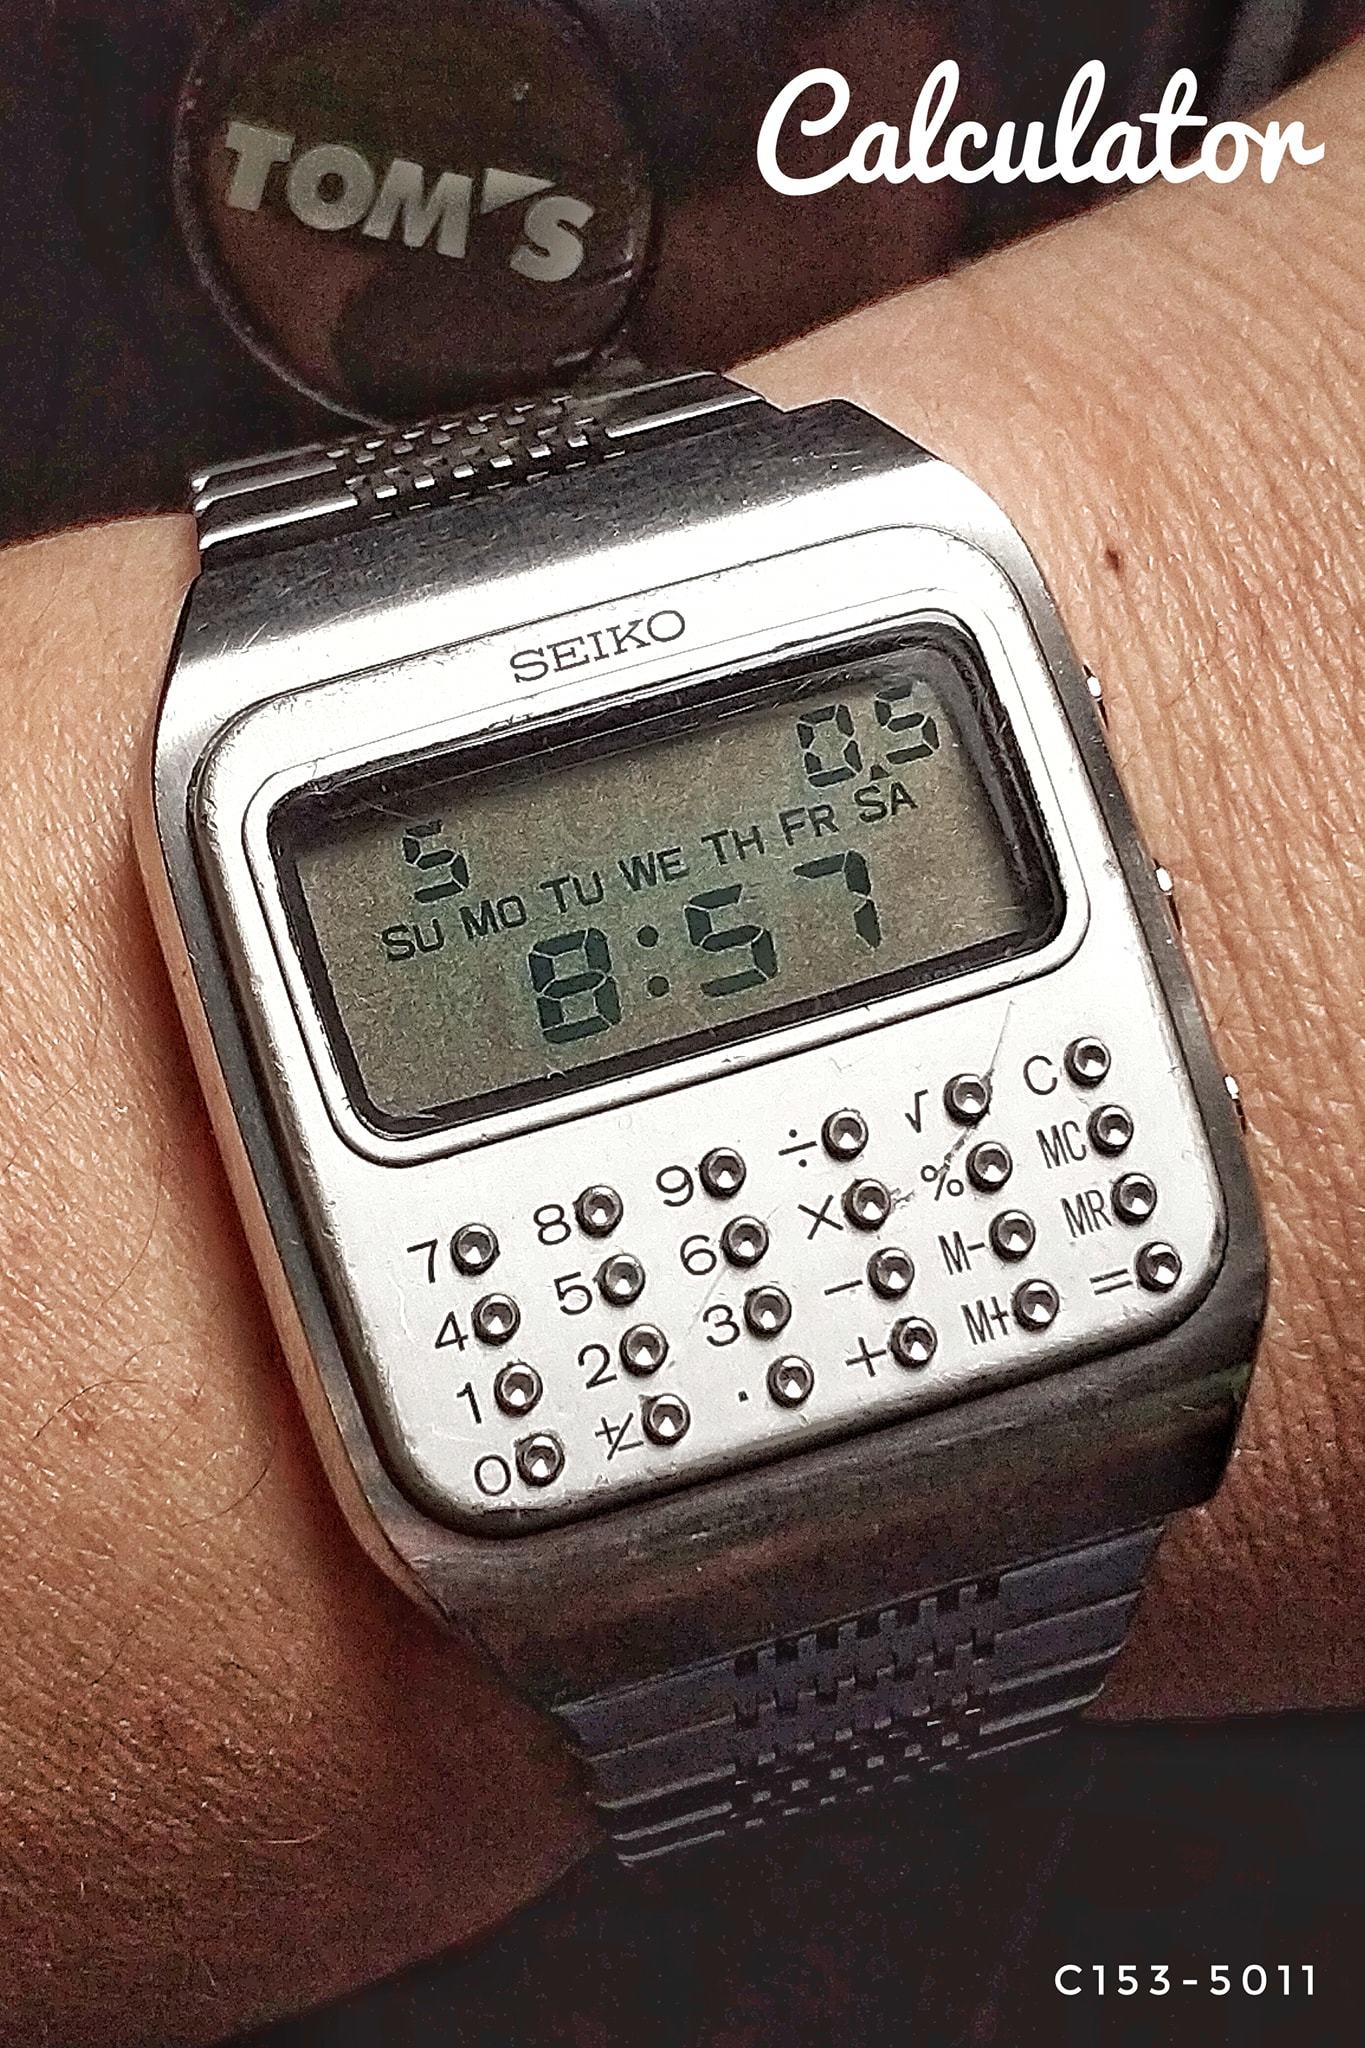 Seiko Calculator Watch C153-5011 - Coolest Vintage